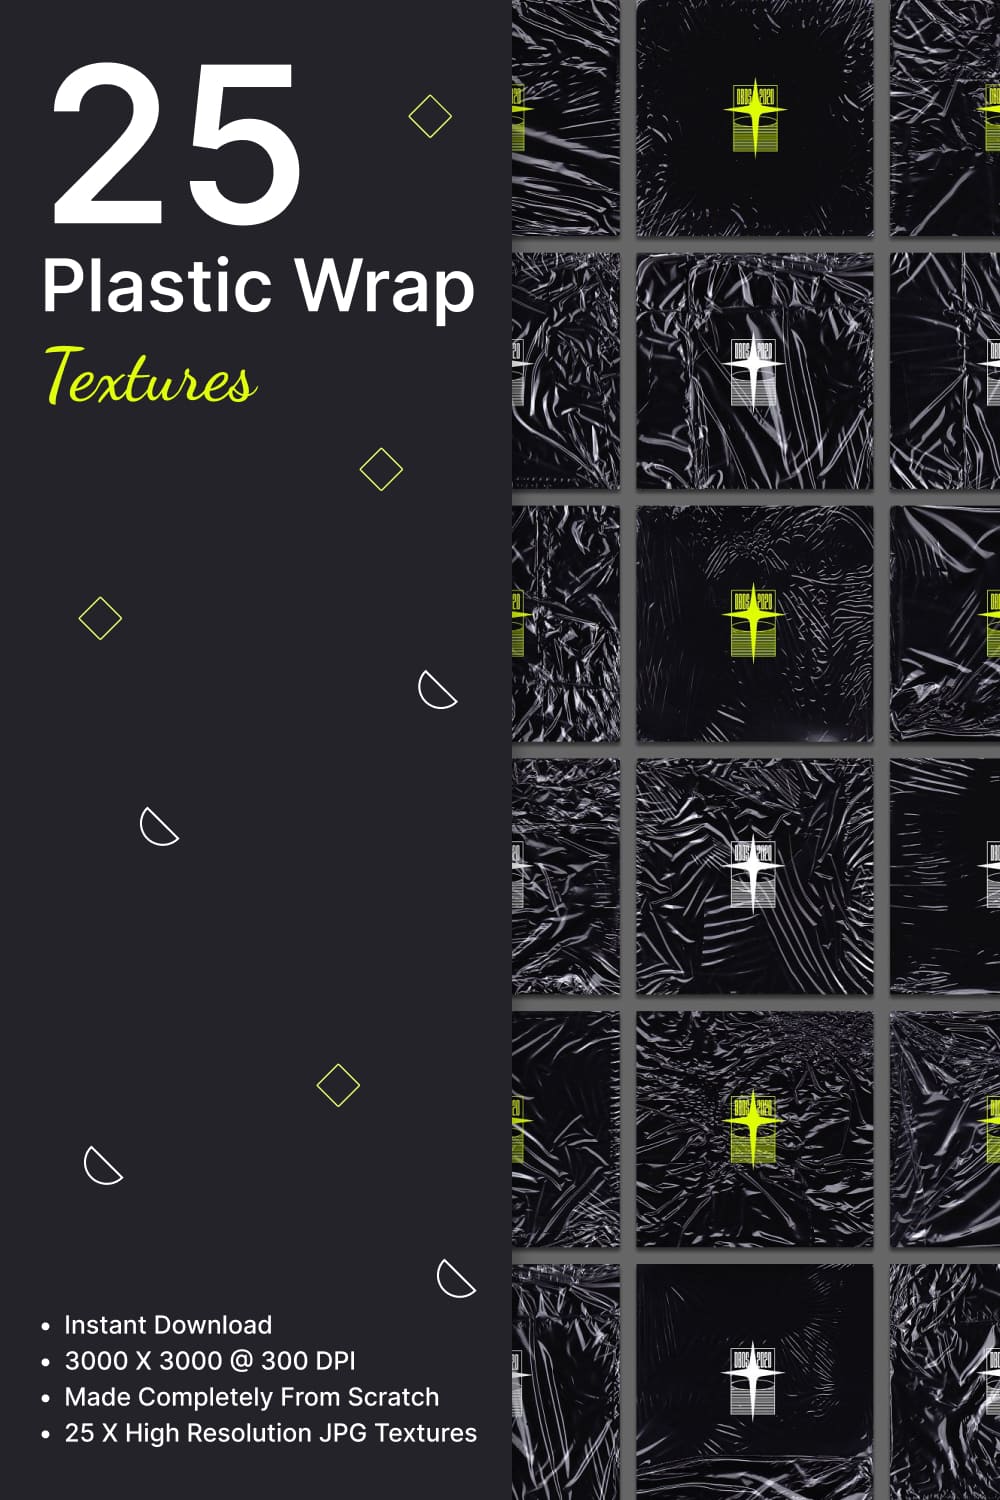 25 plastic wrap textures - pinterest image preview.